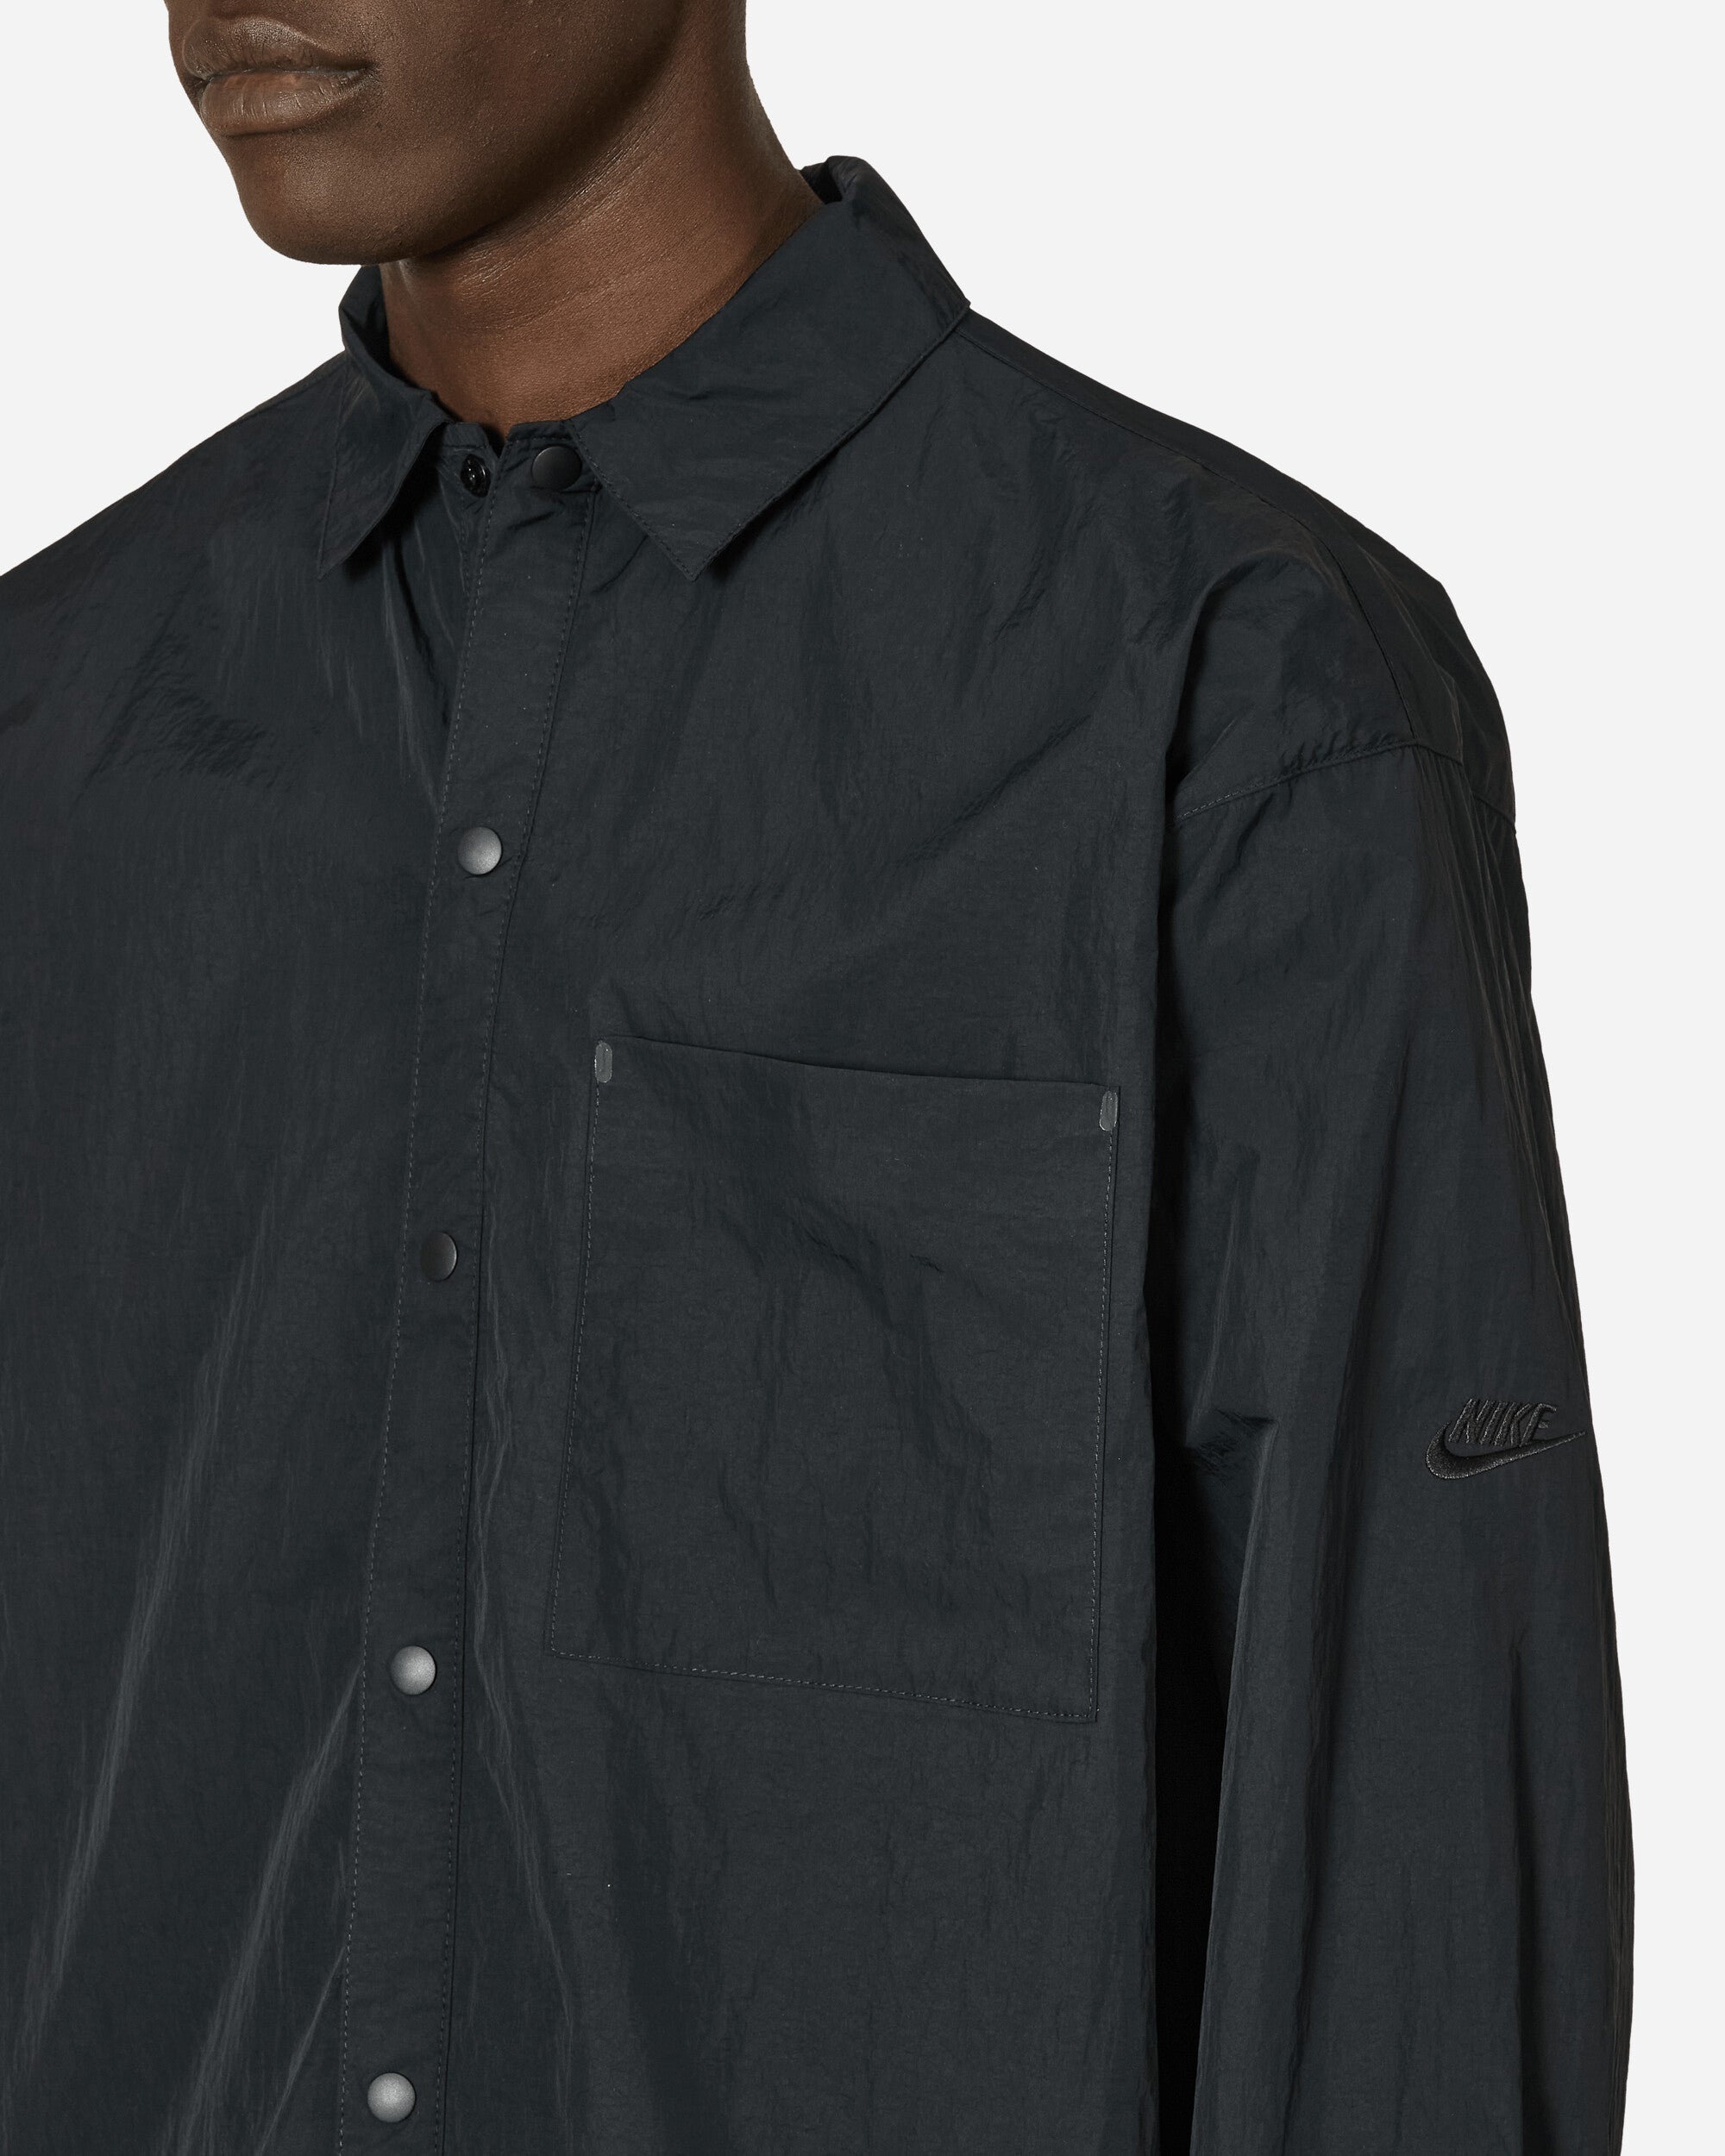 Tech Pack Woven Longsleeve Shirt Black - 5